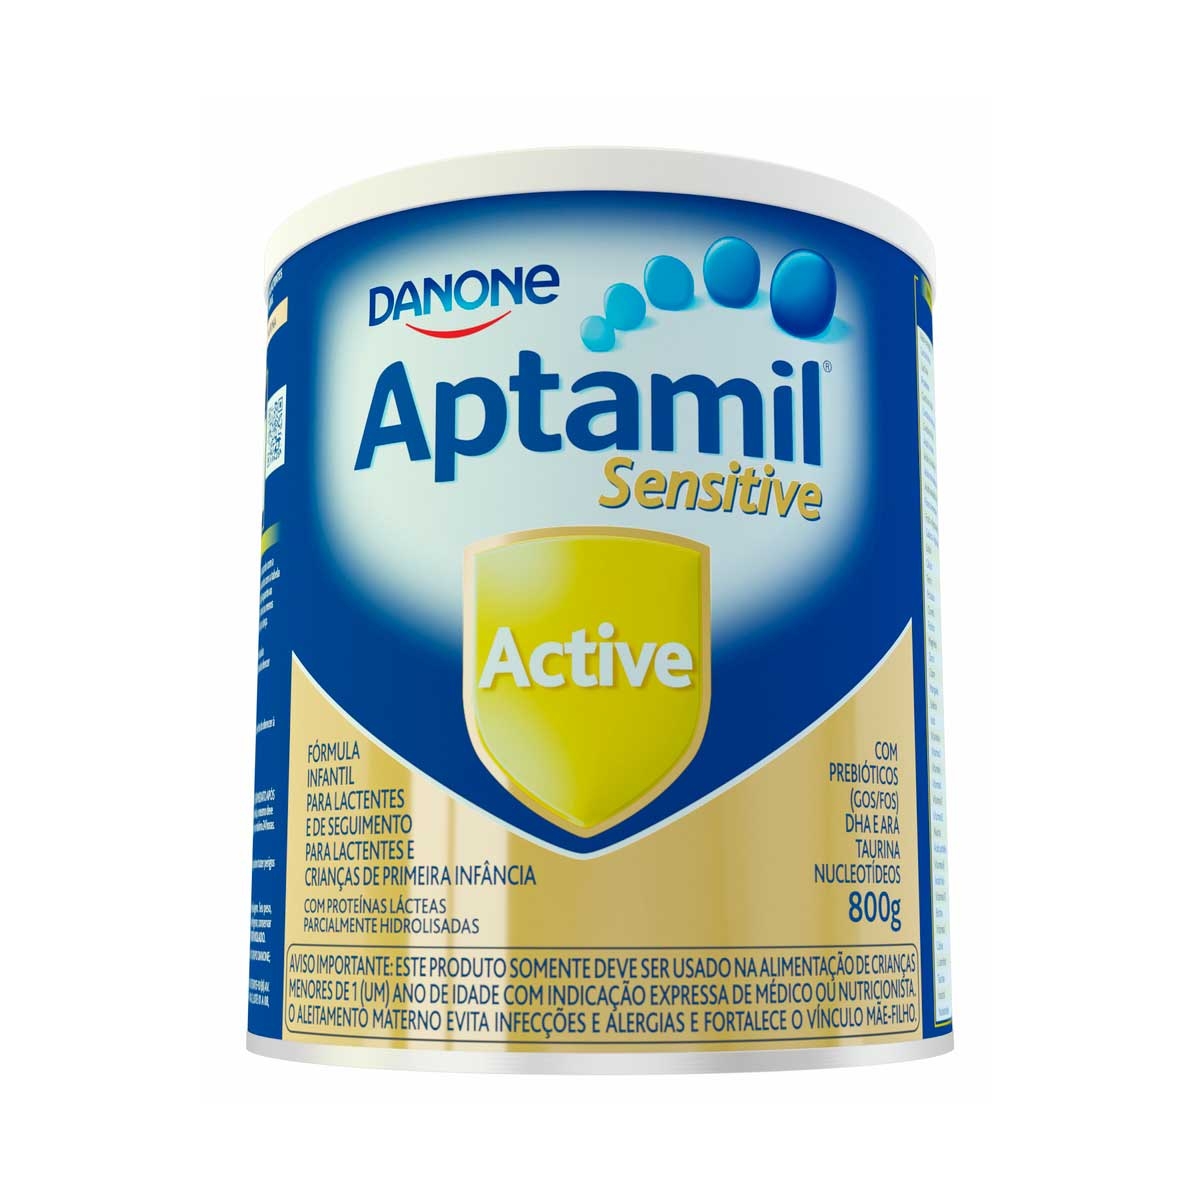 Fórmula Infantil Aptamil Sensitive Active Danone 0 a 36 meses com 800g